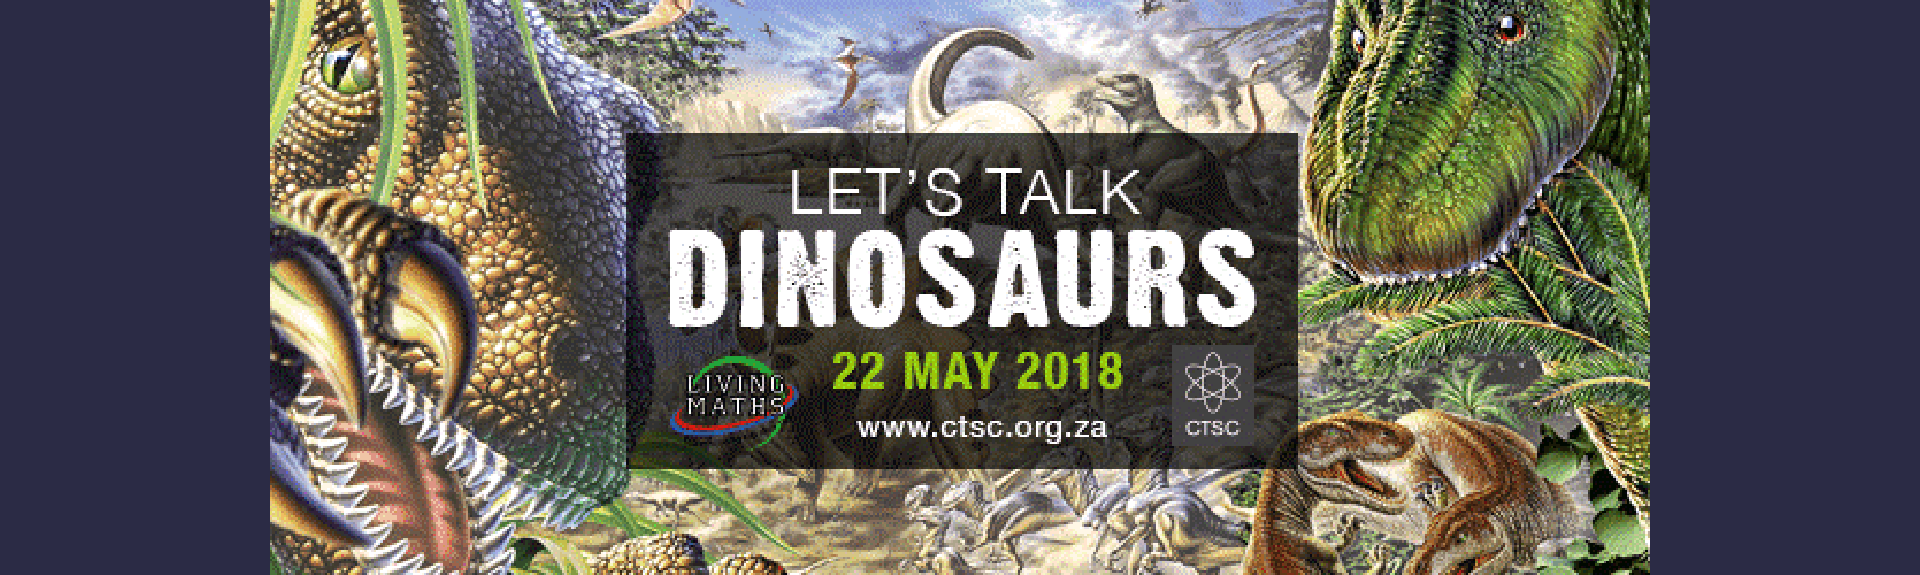 Let's Talk Dinosaurs 